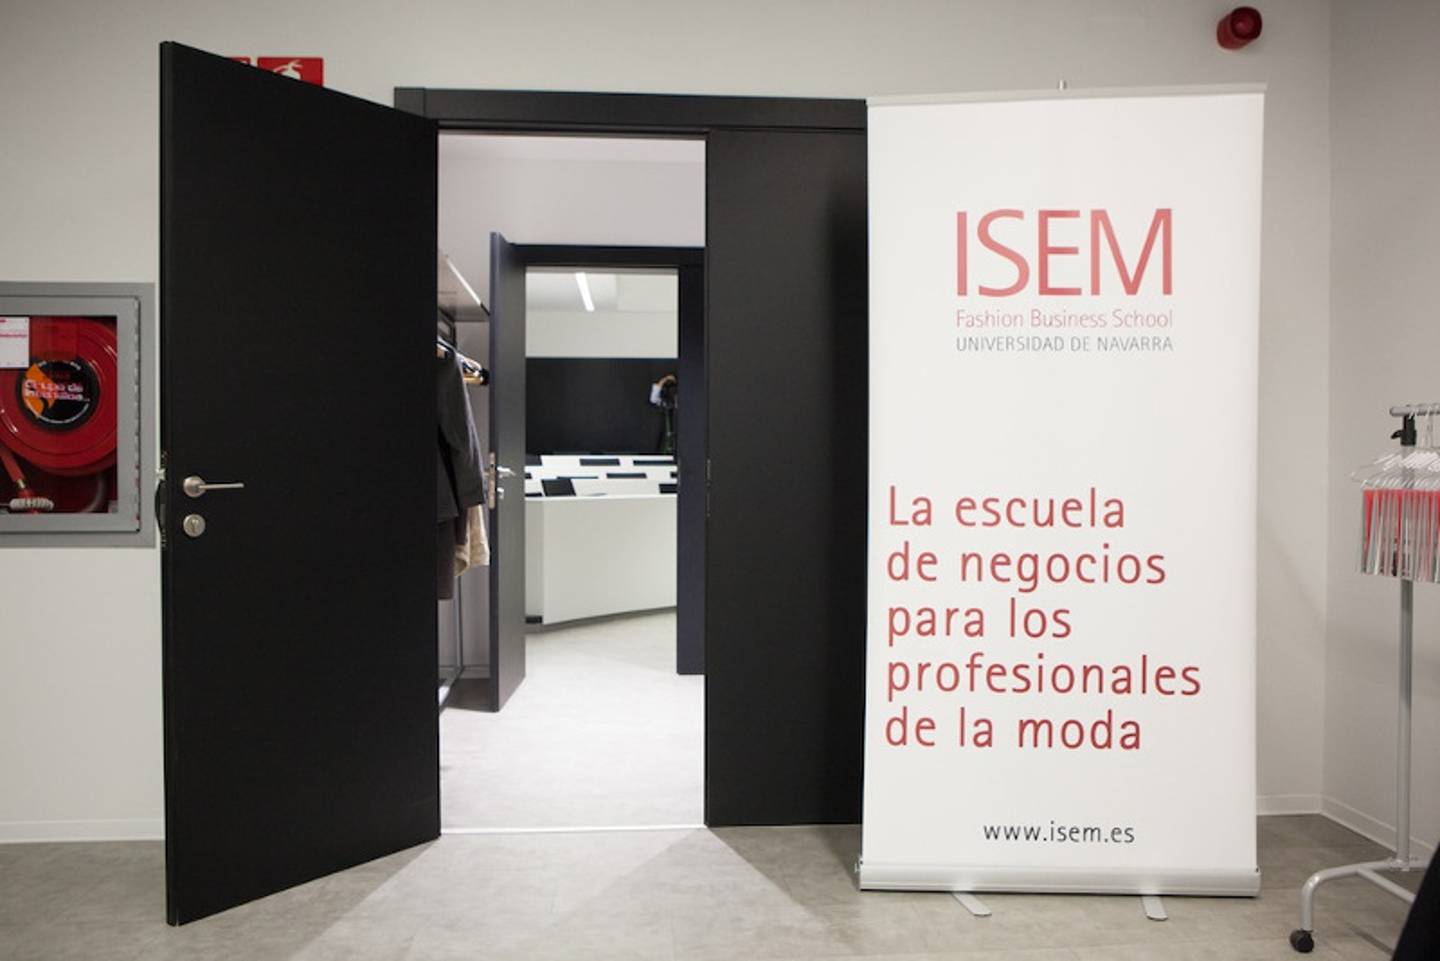 ISEM Fashion Business School